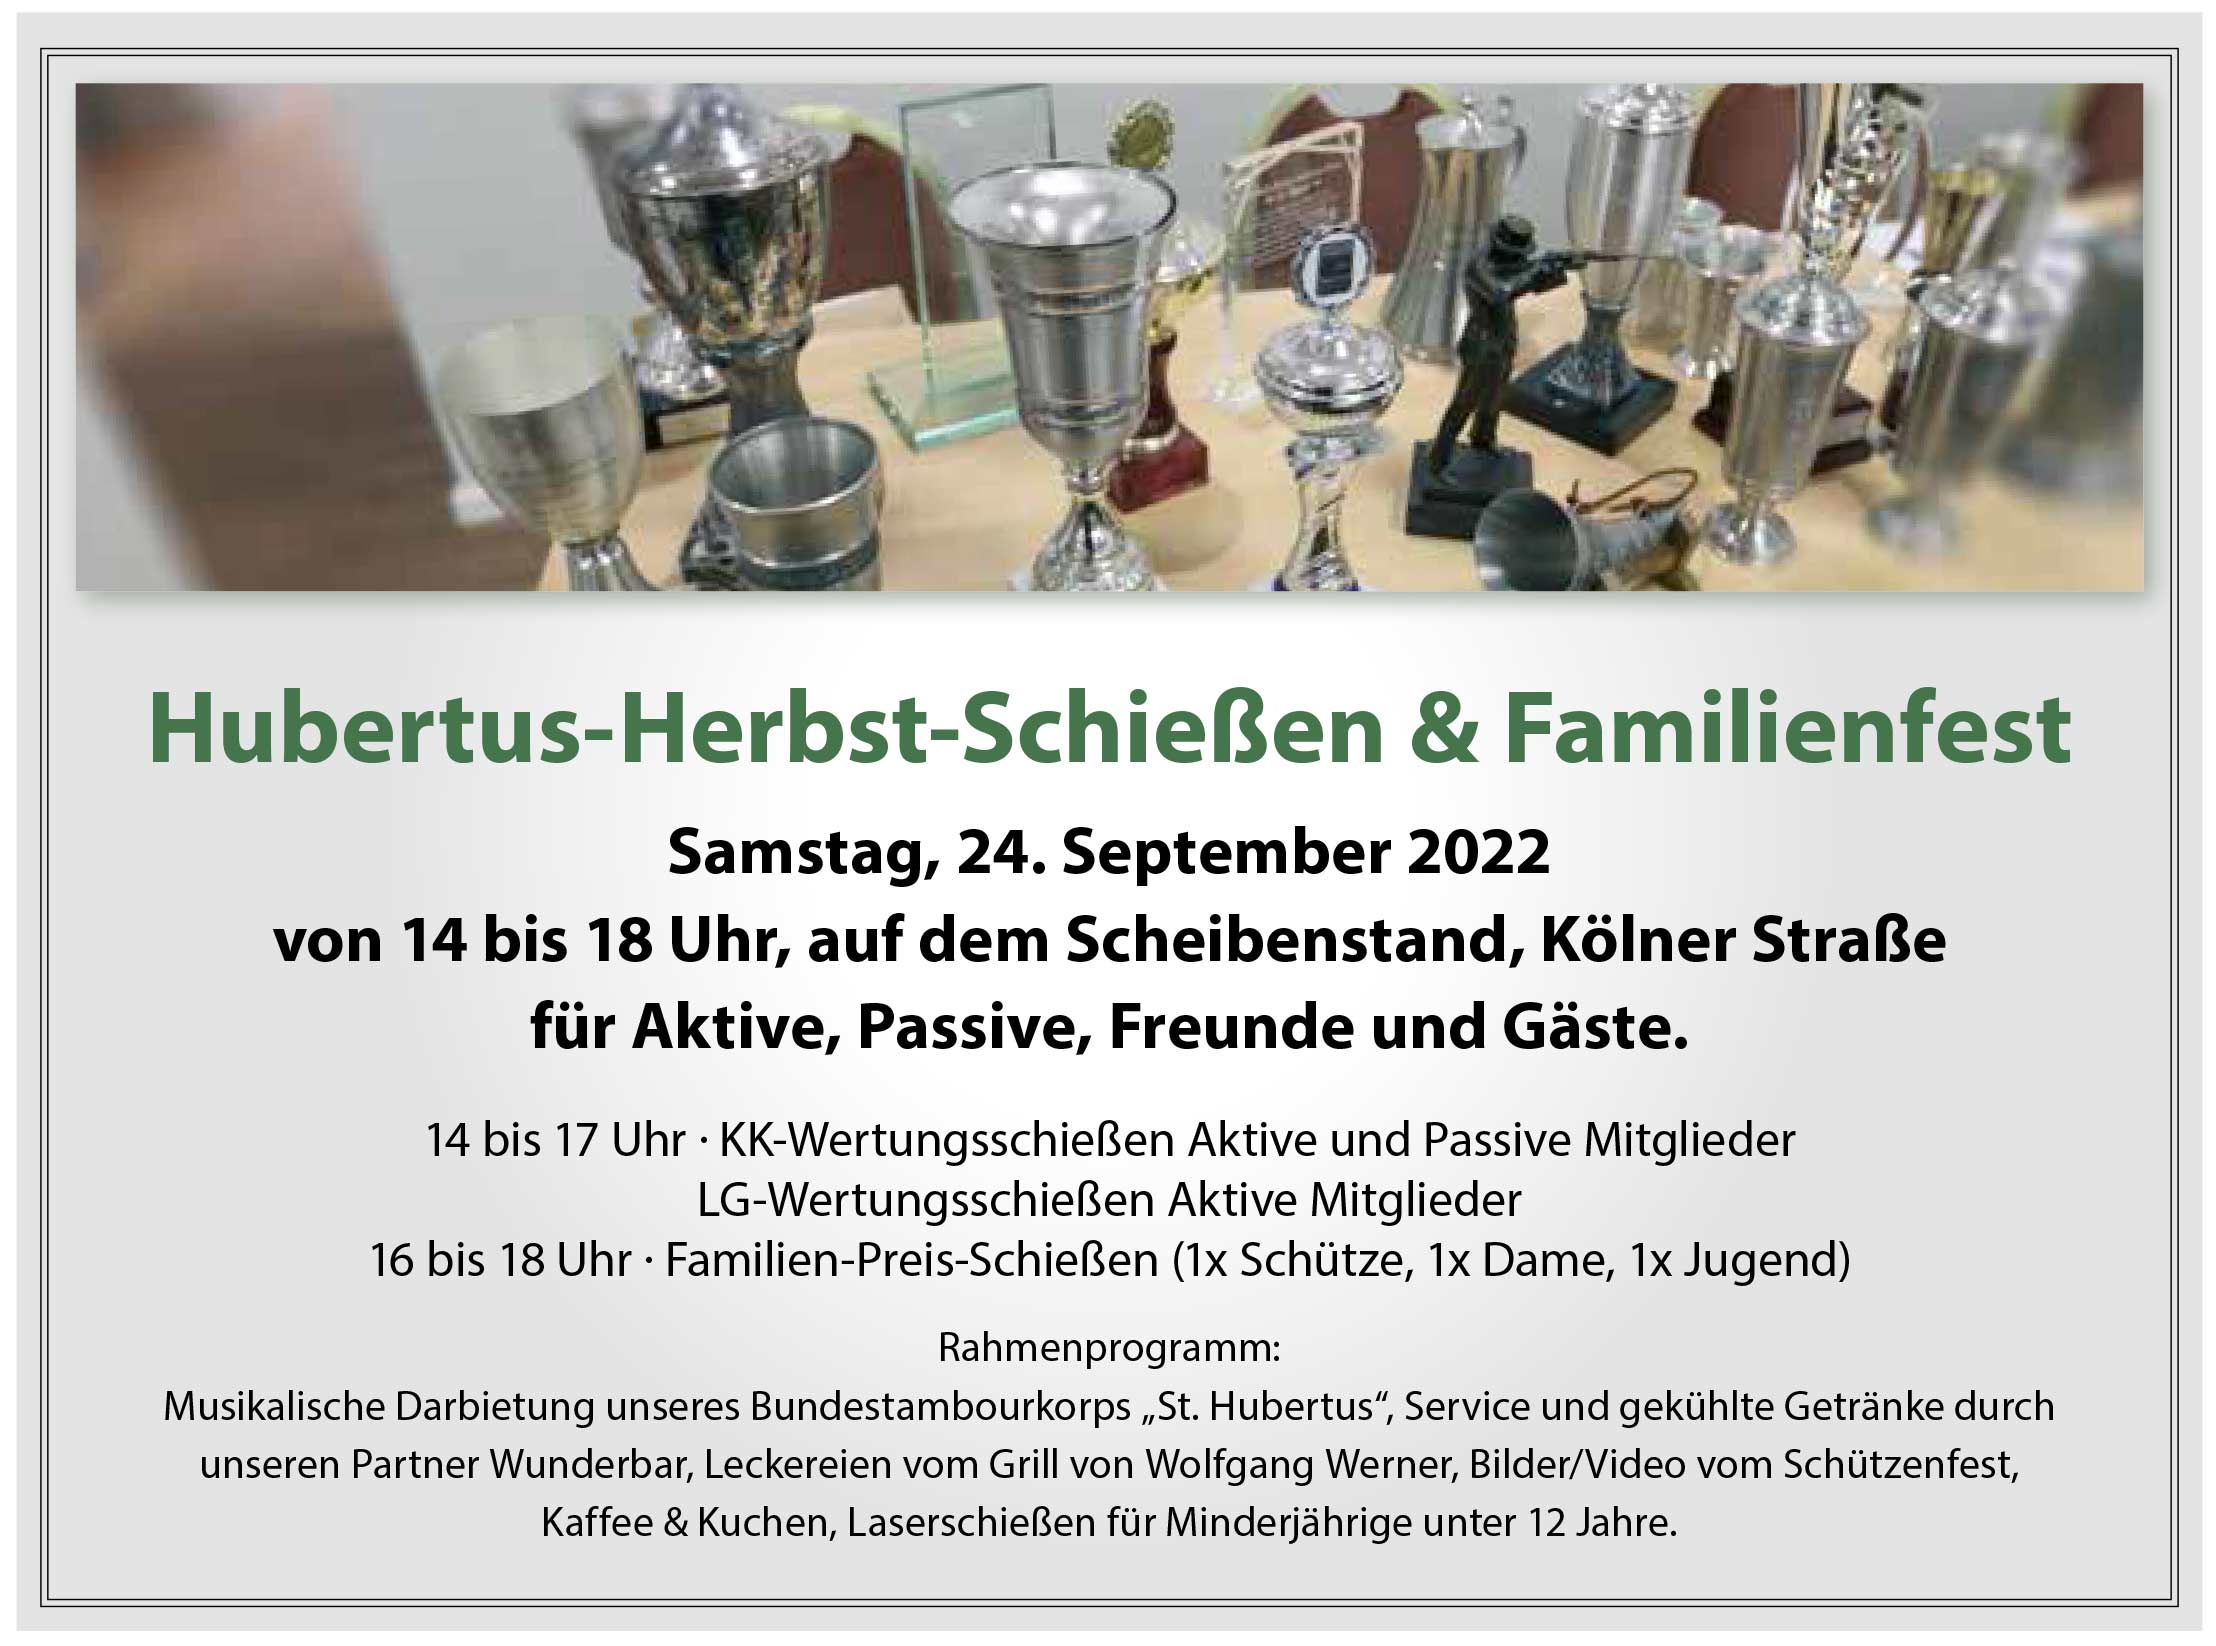 Hubertus-Herbst-Schiessen & Familienfest